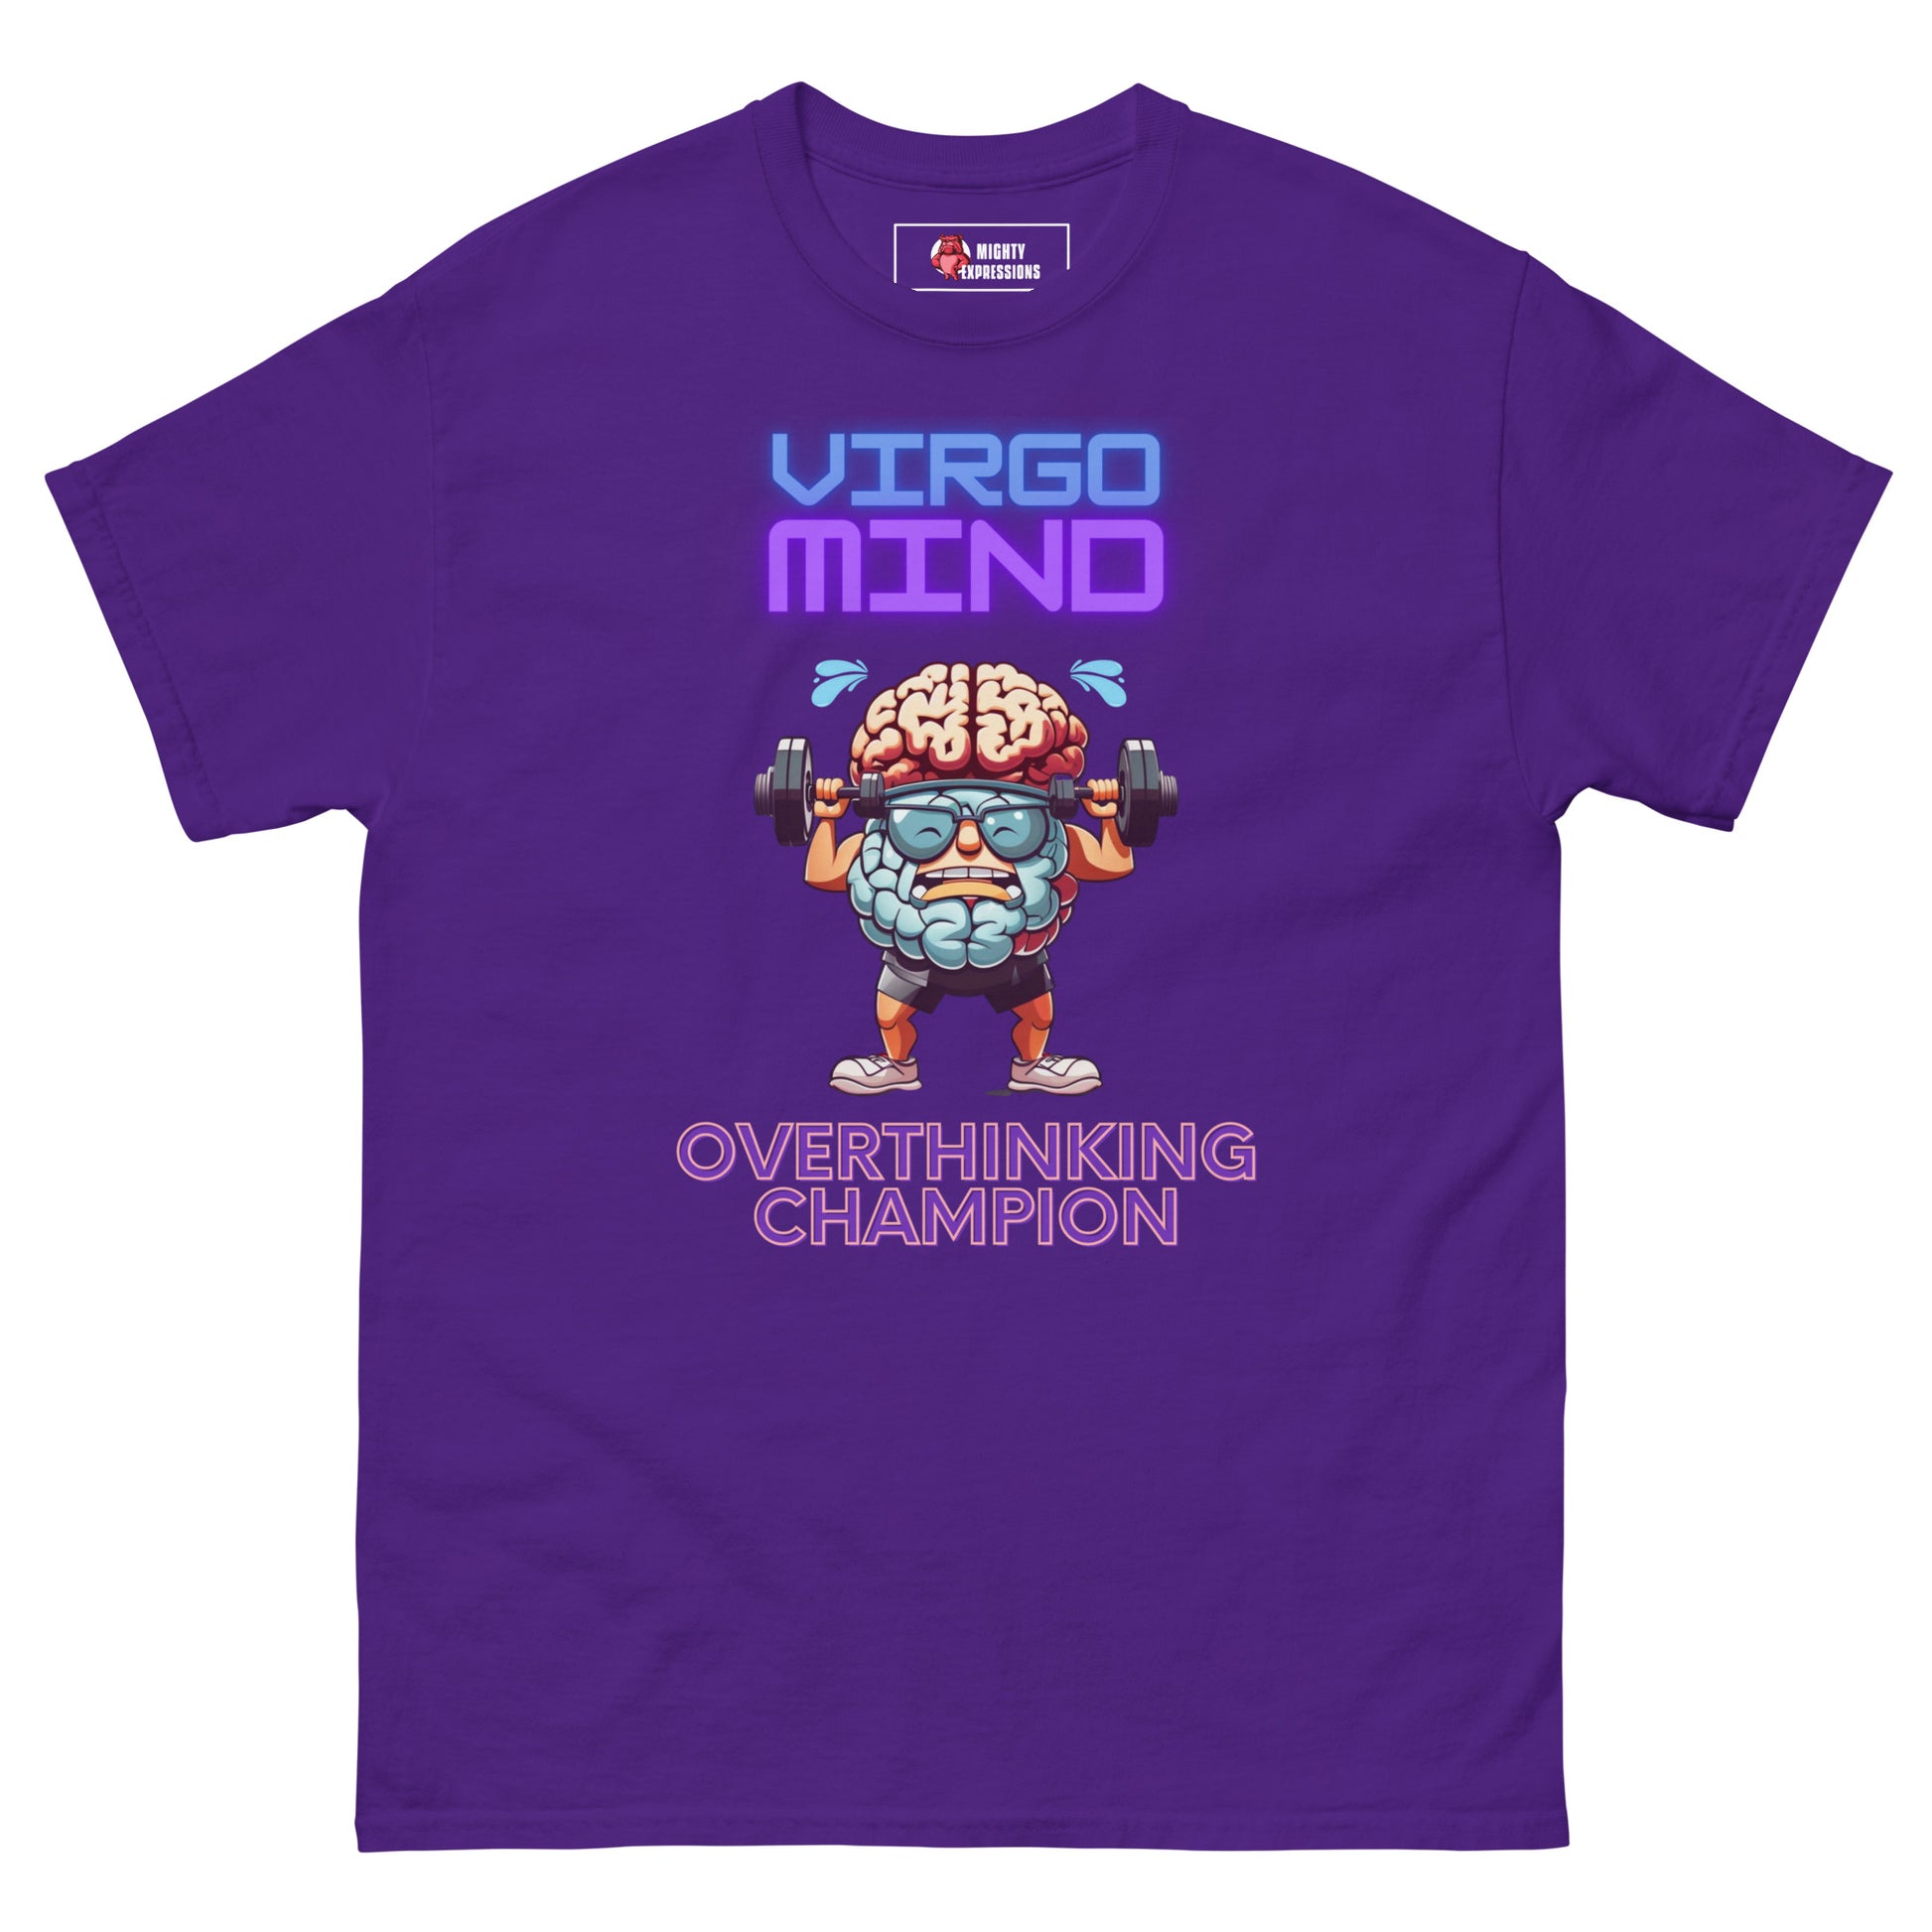 "Virgo Mind, Overthinking Champion" Graphic Tee